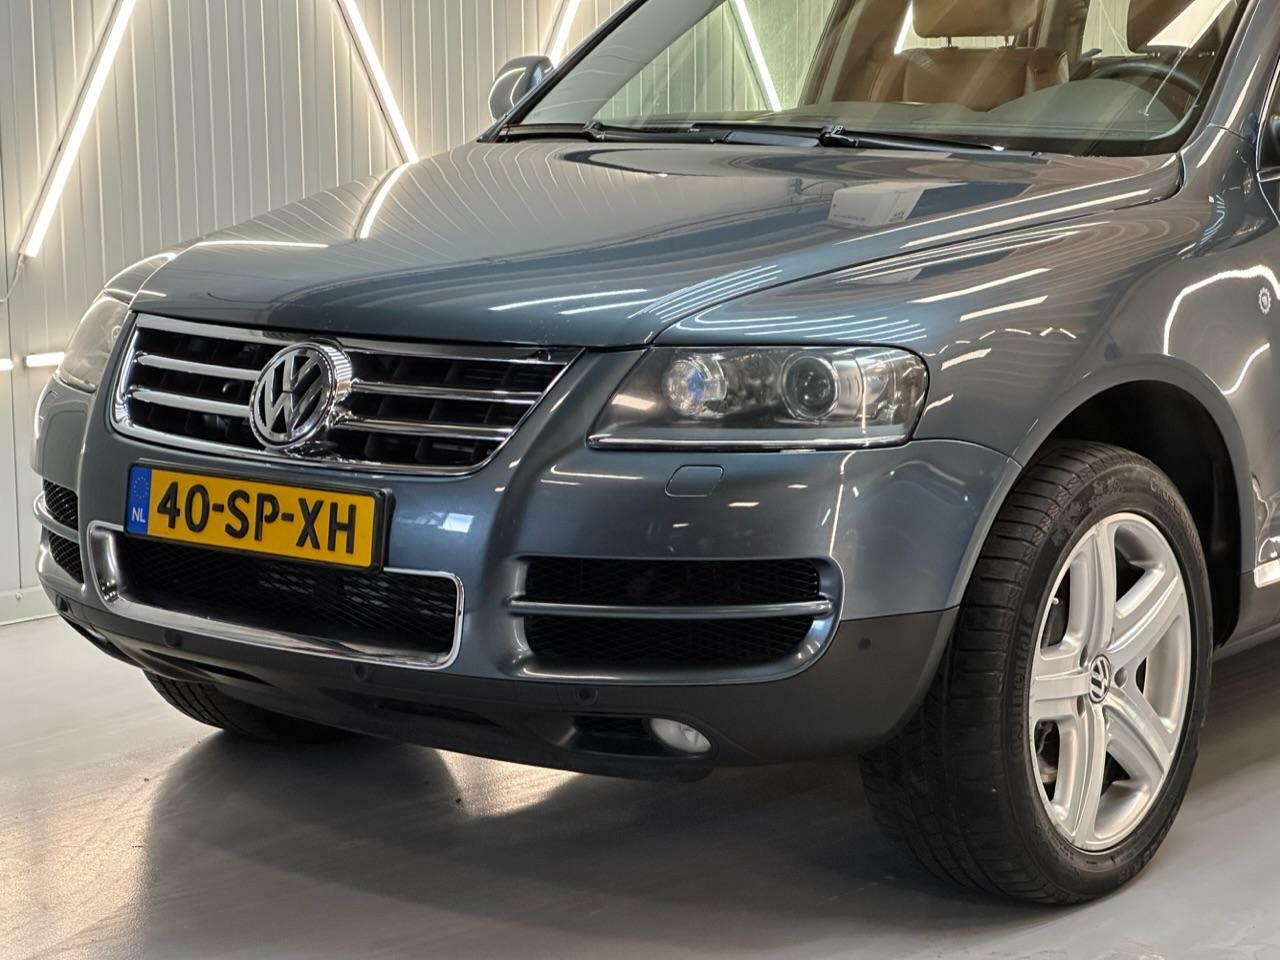 Caroutlet Groningen - Volkswagen Touareg 5.0 V10 TDI | AUTOMAAT | LEDER | 313 PK+